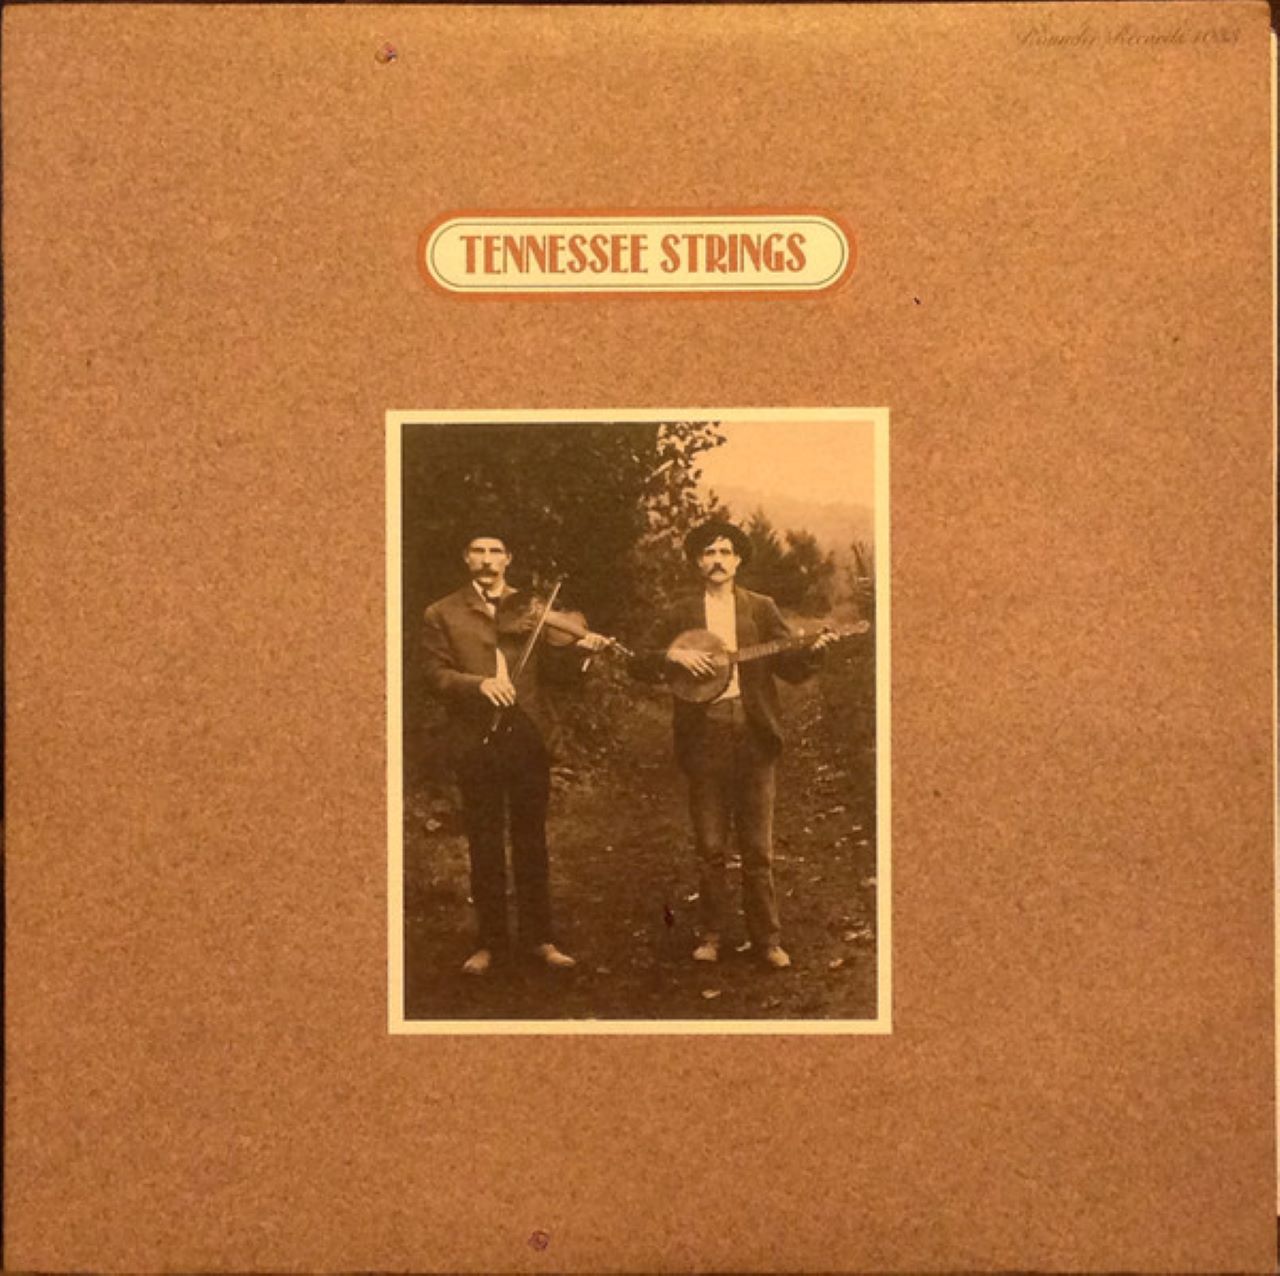 A.A.V.V. – Tennessee Strings cover album